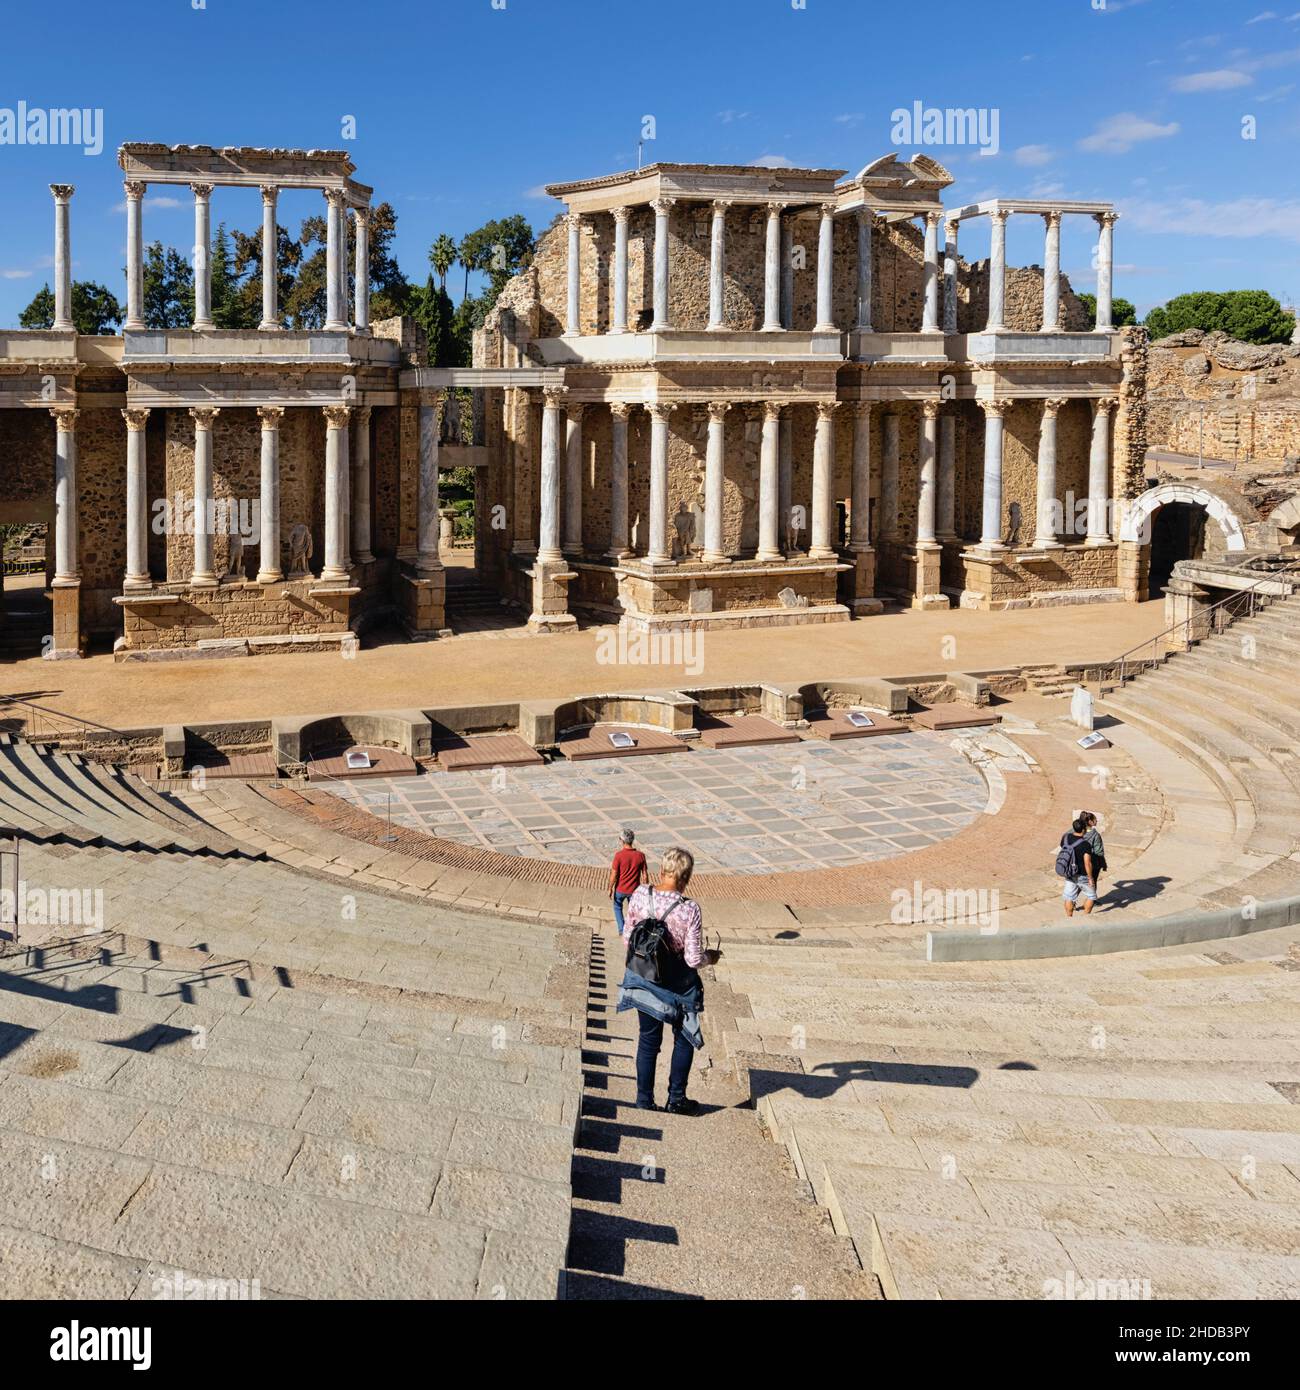 Das römische Theater, Merida, Provinz Badajoz, Extremadura, Spanien. Das Theater wurde ursprünglich in den Jahren 16 bis 15 v. Chr. erbaut. Das Archäologische Ensem Stockfoto